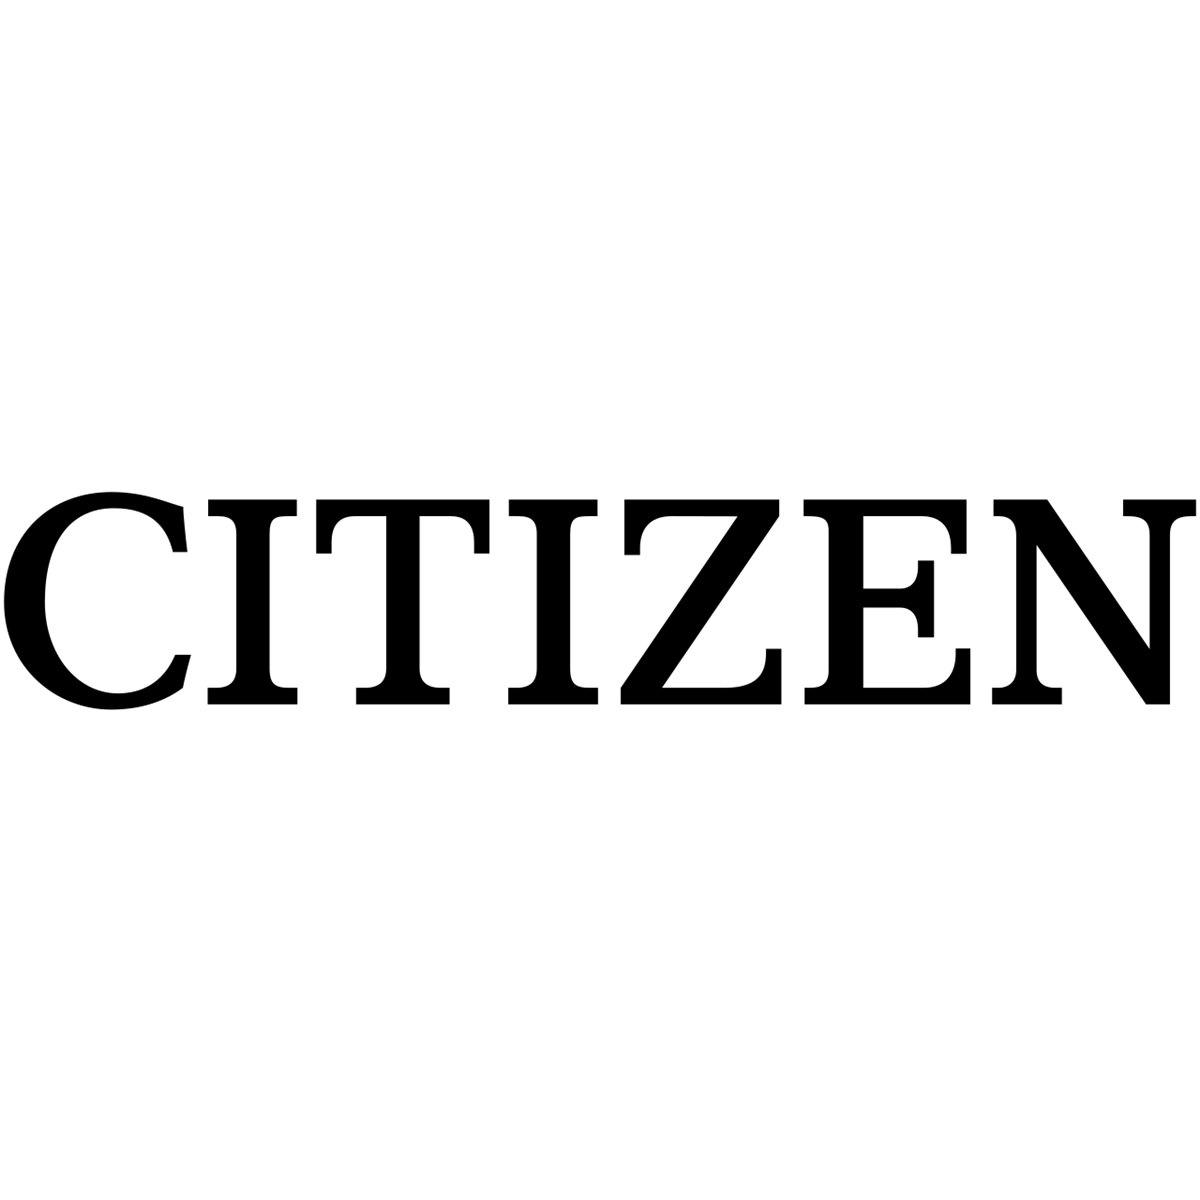 Citizen CL-S6621 - Premium - Etikettendrucker - monochrom - direkt - Label Printer - Label Printer